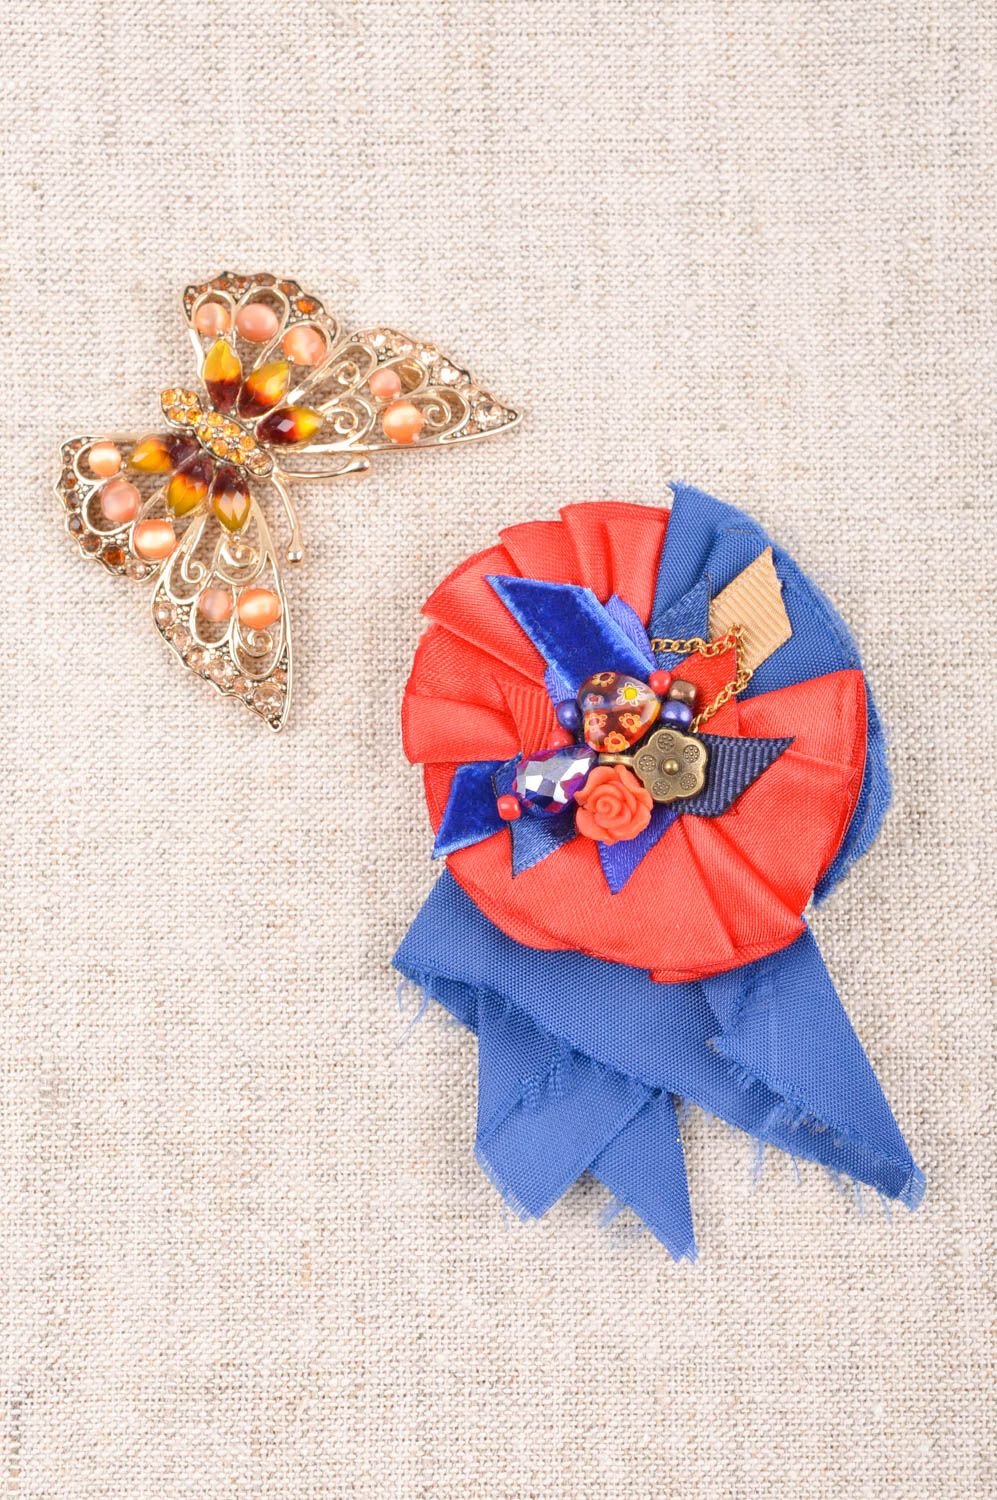 Broche artesanal de color rojiazul accesorio de moda regalo original para mujer foto 1